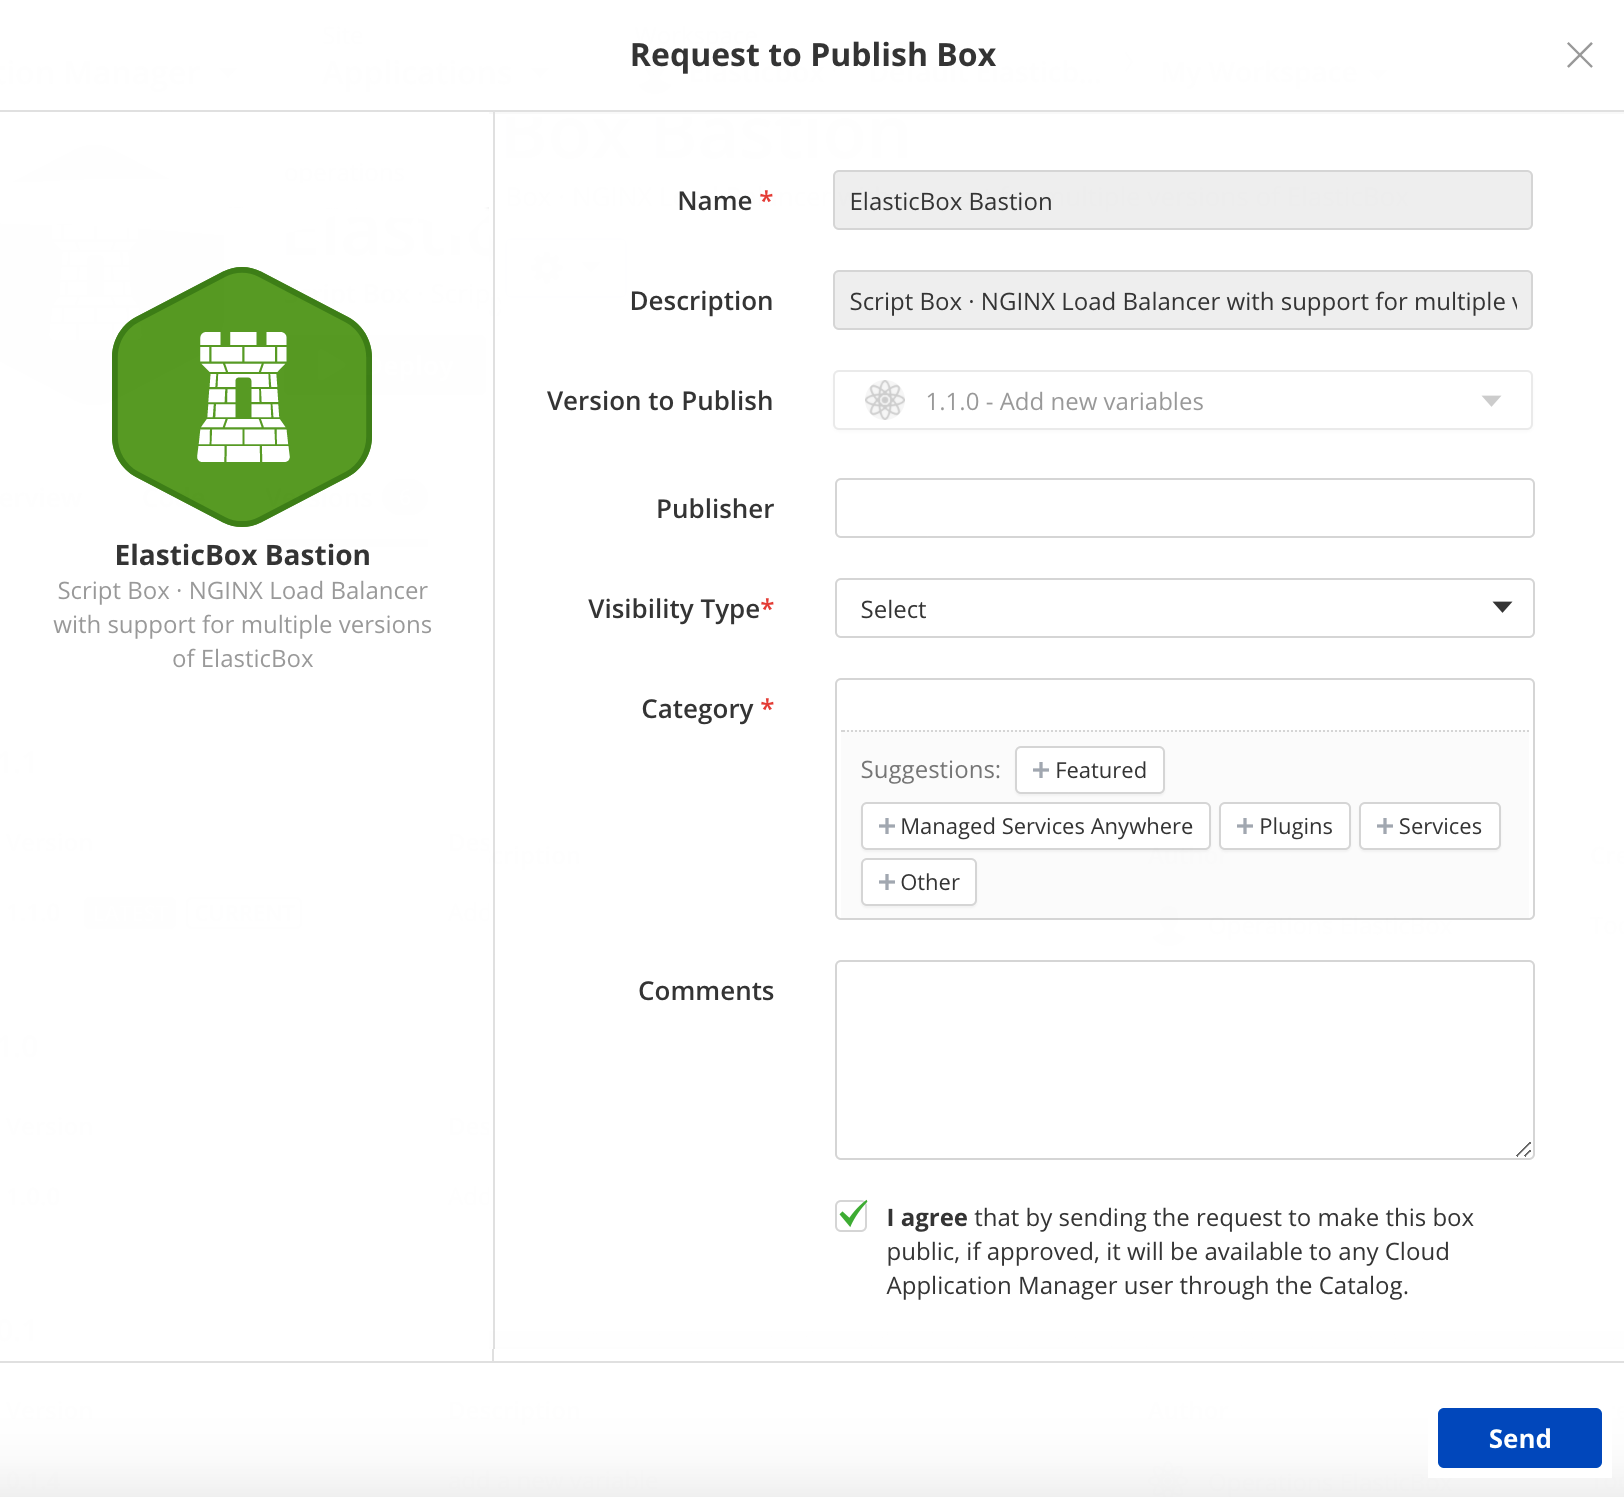 Version control - Publish box request form